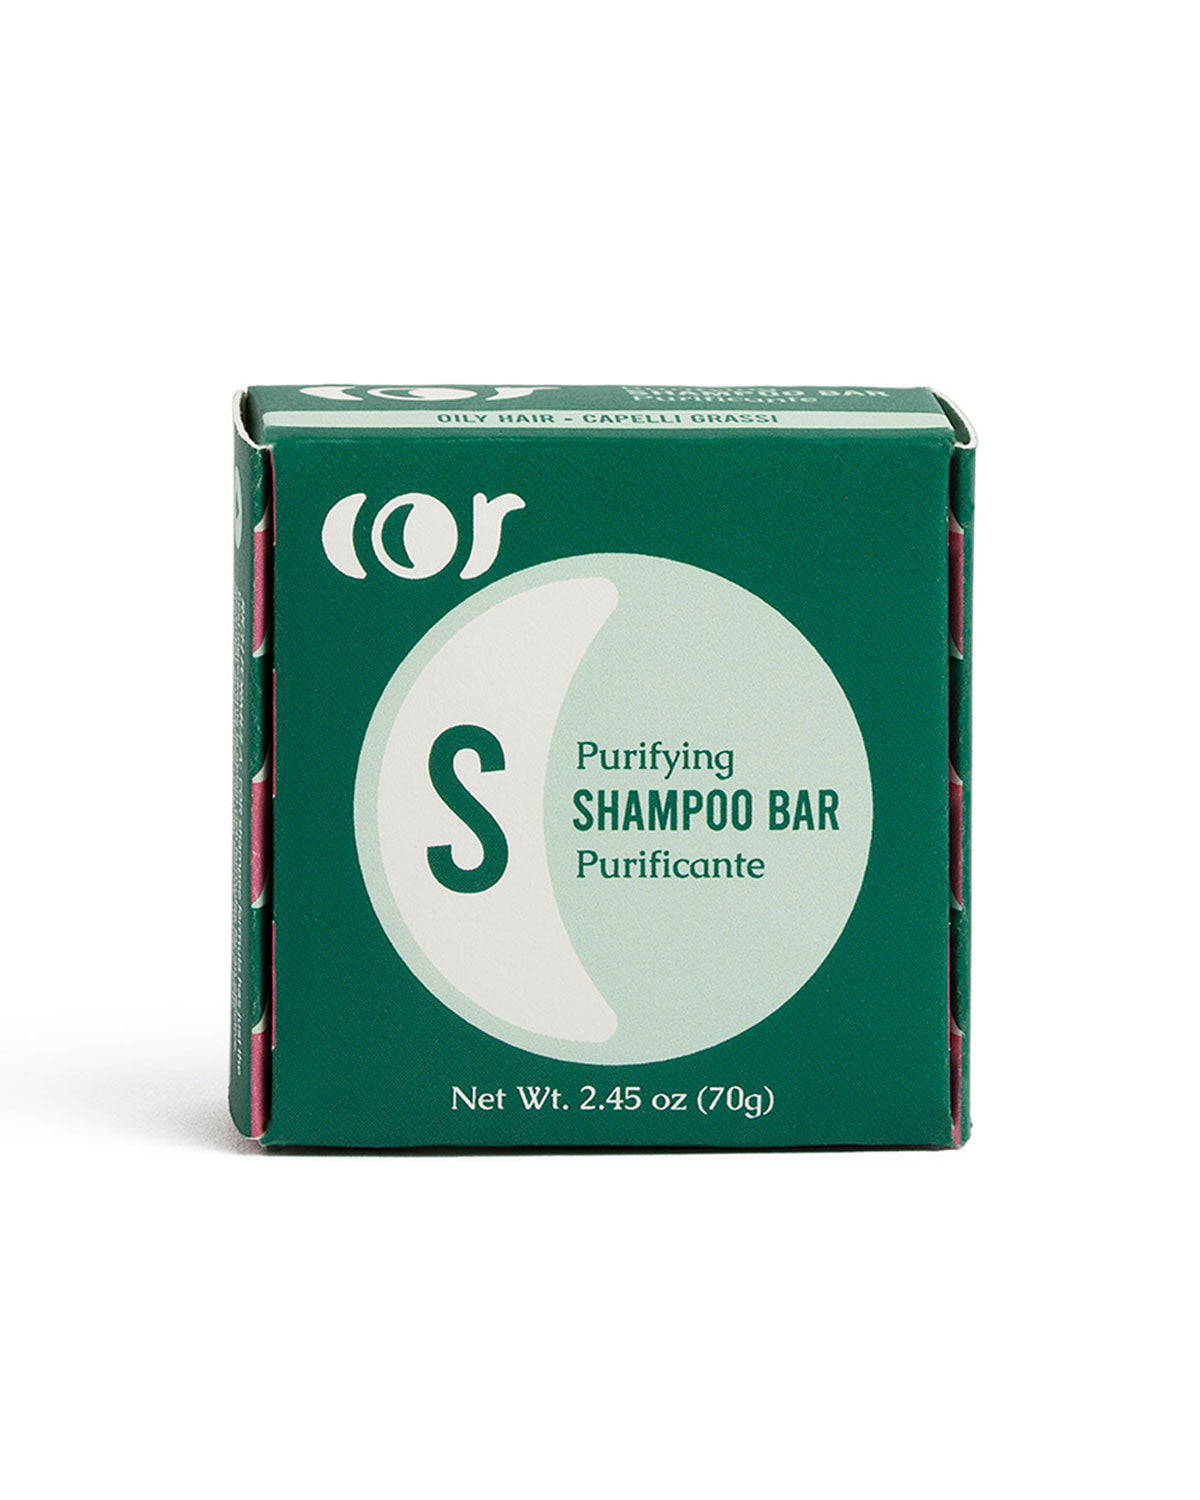 Shampoo Bar Purificante - Capelli grassi